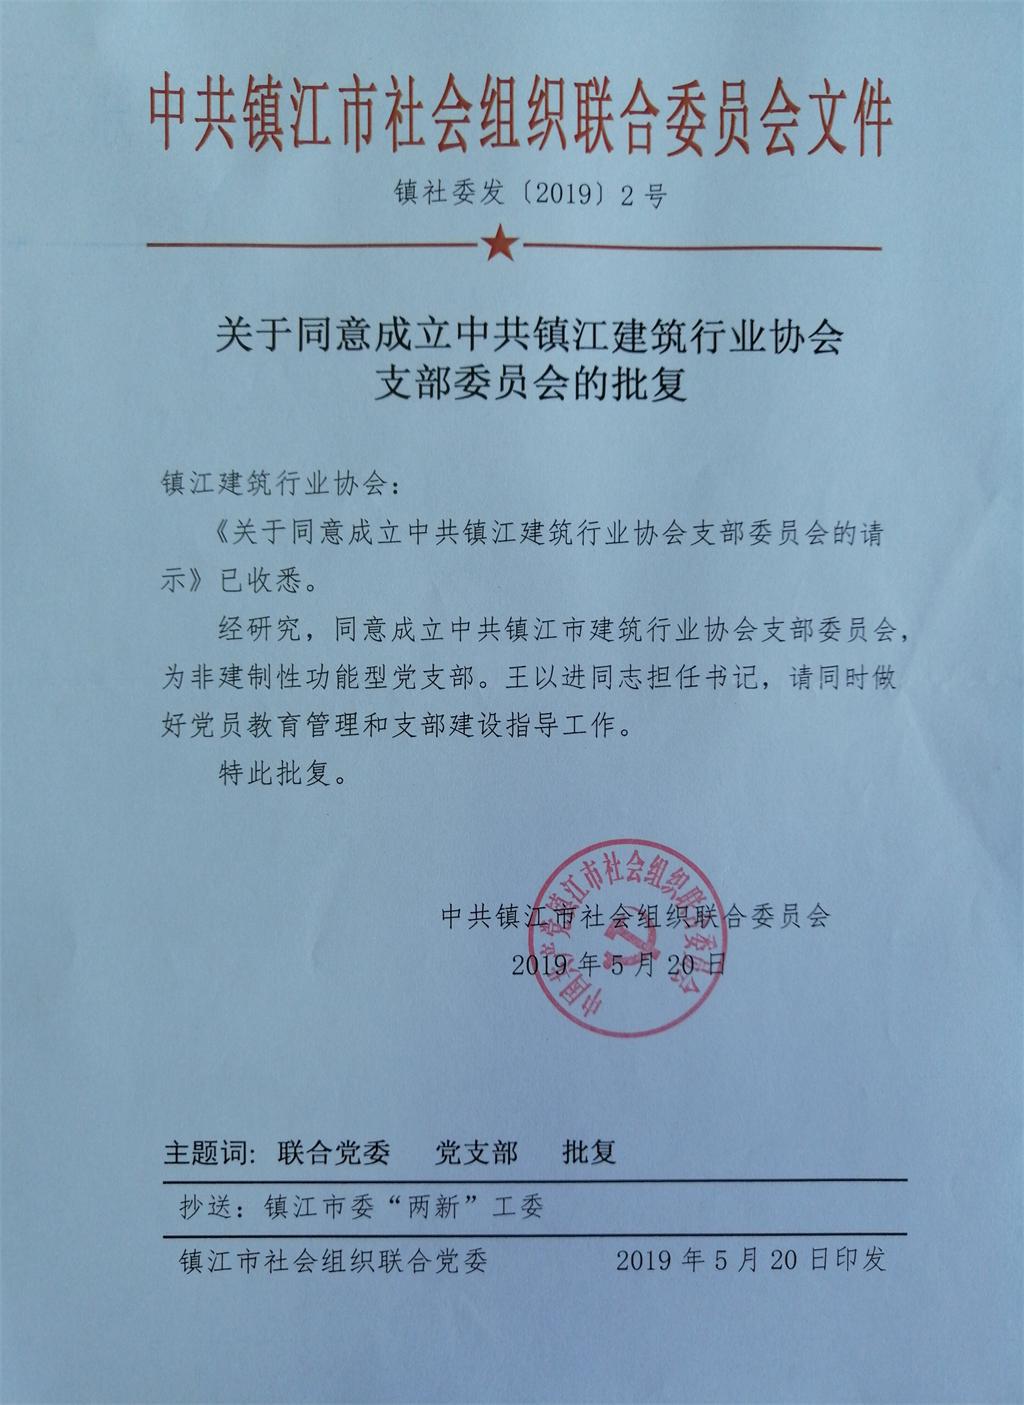 关于同意成立中共镇江建筑行业协会支部委员会的批复